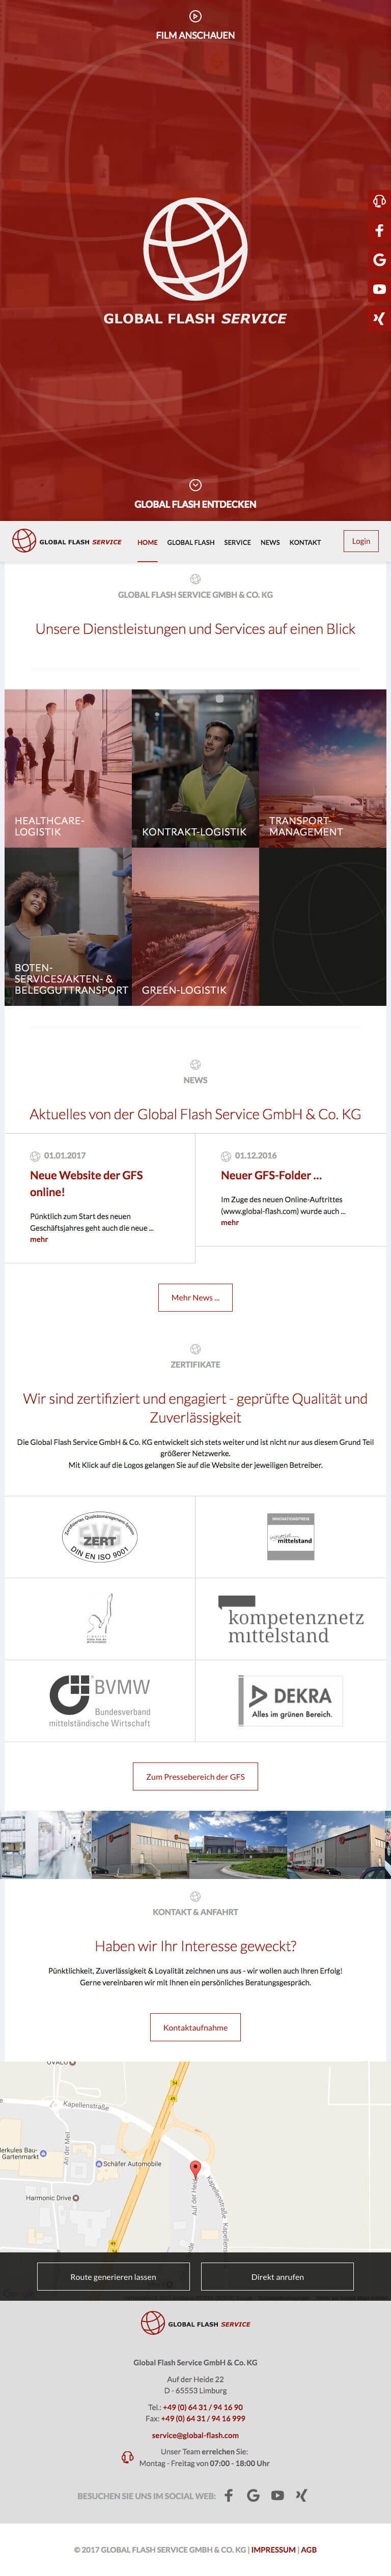 mister bk! | Global Flash Service